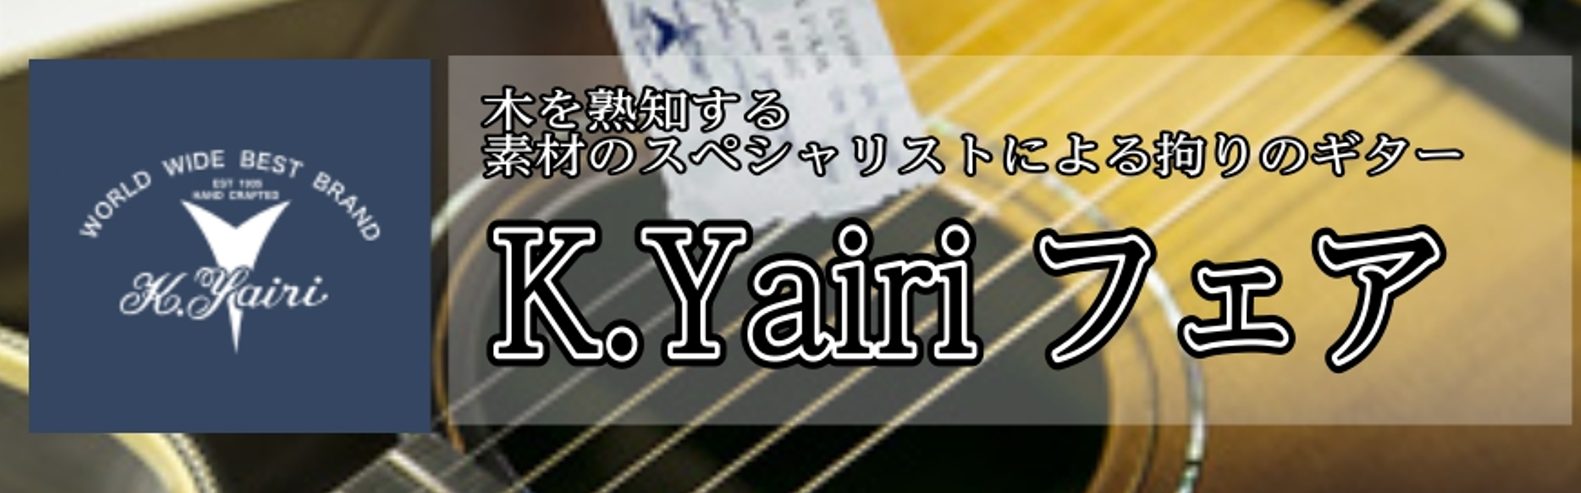 *K.Yairiフェア開催中！！ 現在K.Yairiフェアを開催中です。K.Yairiは日本製のギターで非常に評価が高くコストパフォーマンスに優れたモデルを多数製作しています。]] 期間中は普段店頭に並ばないモデルを展示致します。期間限定の開催になりますのでぜひお越しくださいませ。 *展示モデル * […]